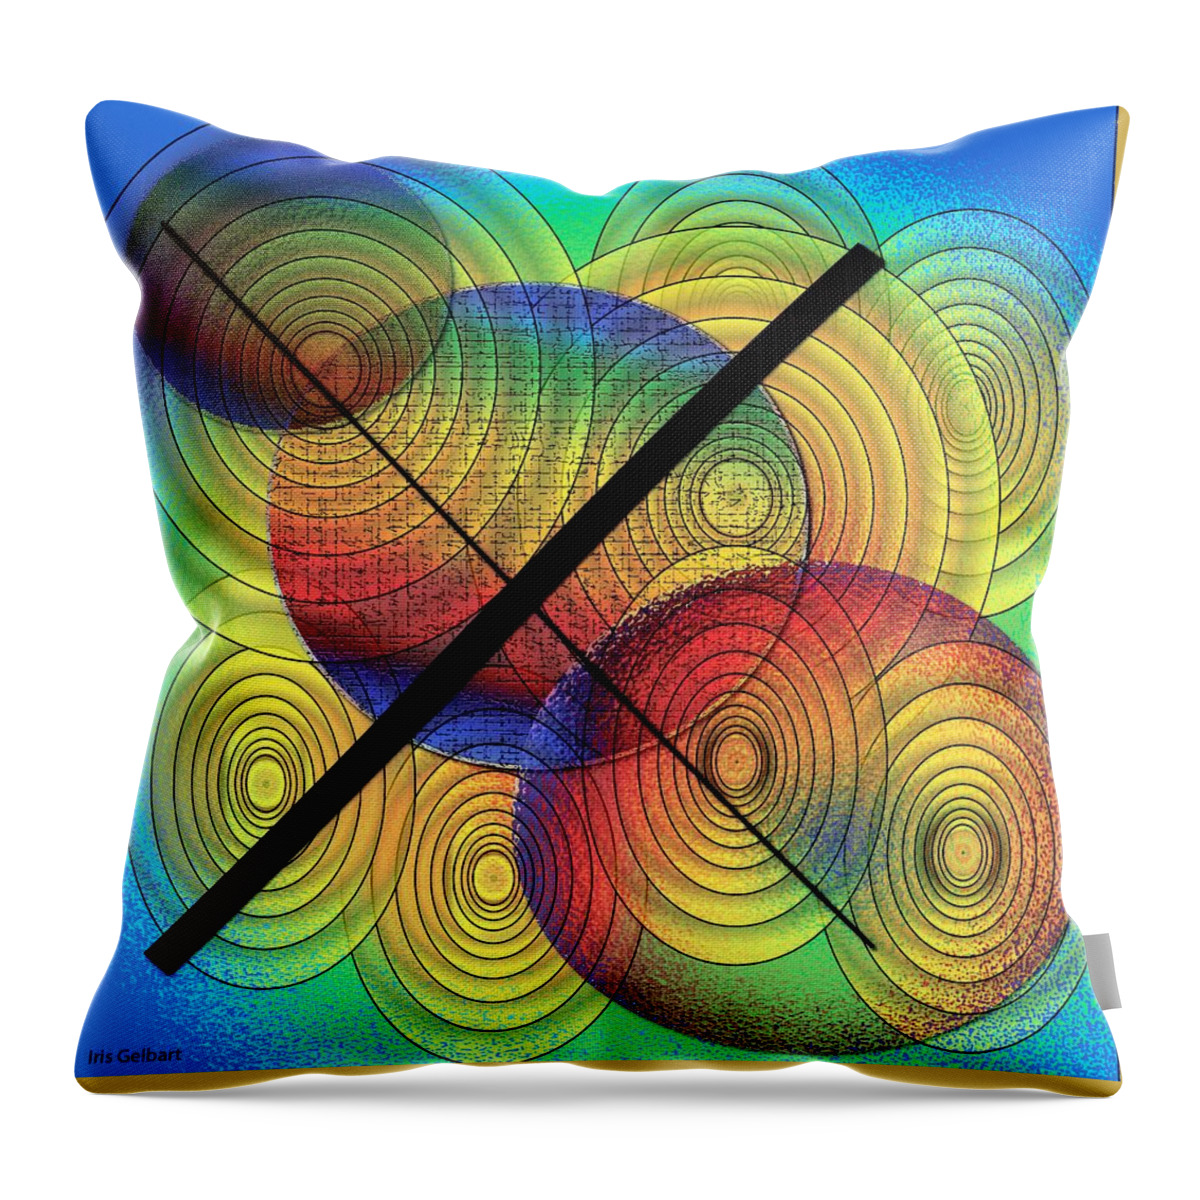 Circles Throw Pillow featuring the digital art Approaching by Iris Gelbart